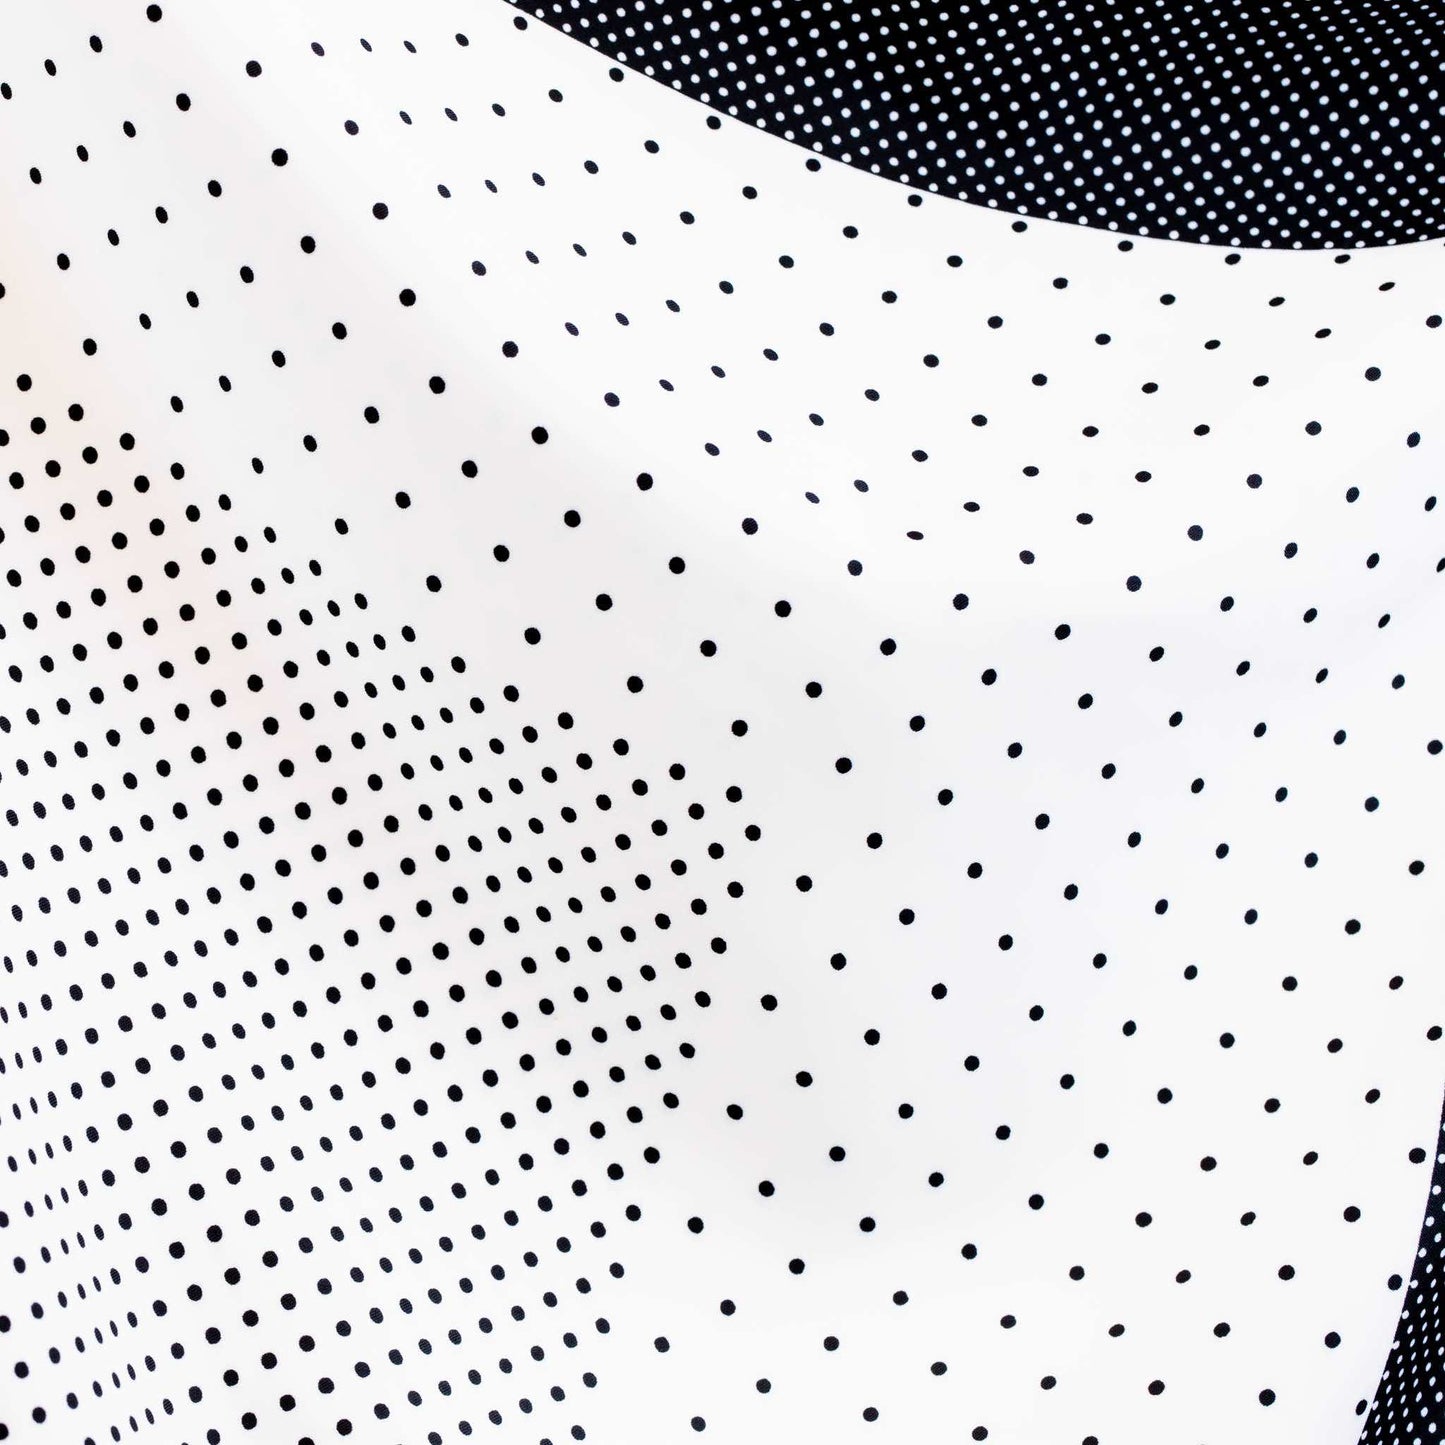 Eșarfă damă din satin, imprimeu cu secțiuni geometrice și buline mici, 55 x 55 cm - Alb, Negru 